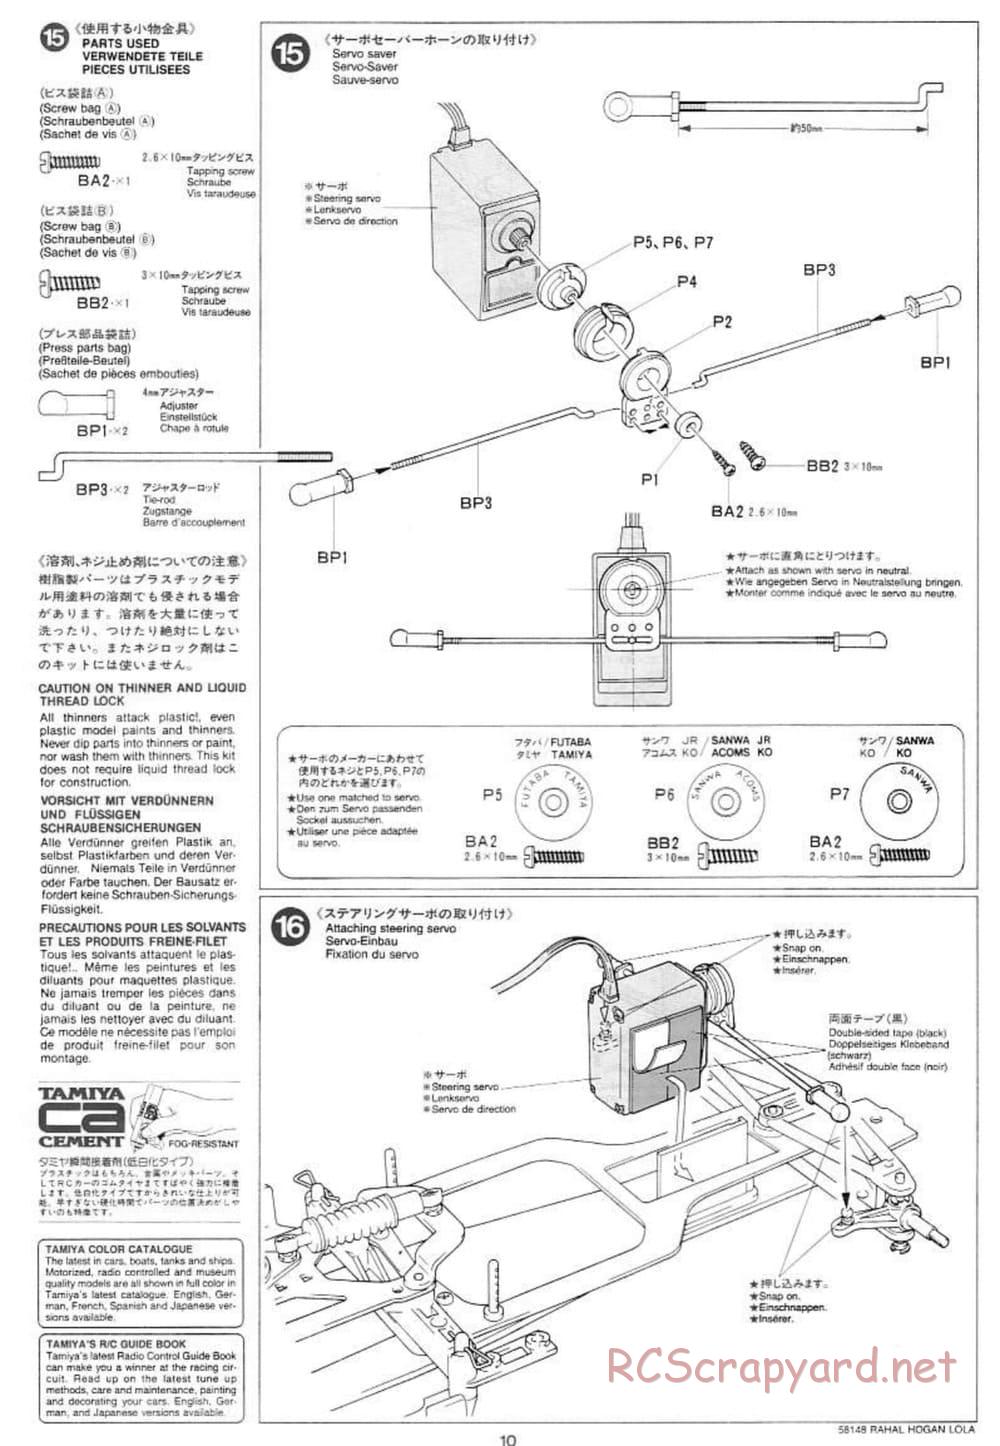 Tamiya - Rahal-Hogan Motorola Lola T94/00 Honda - F103L Chassis - Manual - Page 10